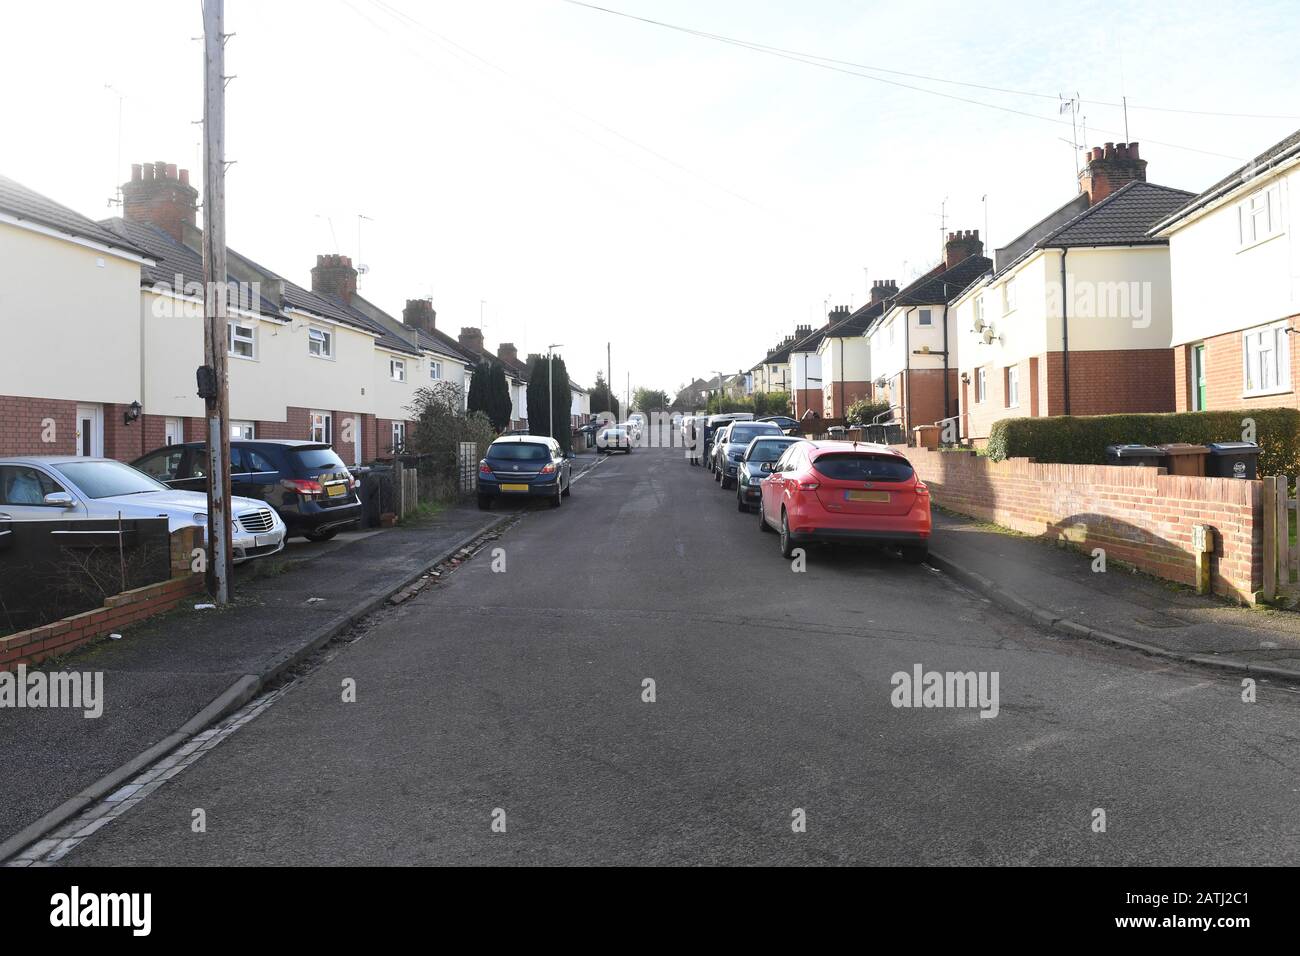 Bild PIXELIG VON PA PICTURE DESK Burley Road in Bishop's Stortford, Hertfordshire, wo die Polizei eine nächtliche razzia in einem Haus durchführte, als sie auf den Terroranschlag in Streatham am Sonntag reagierten. Stockfoto